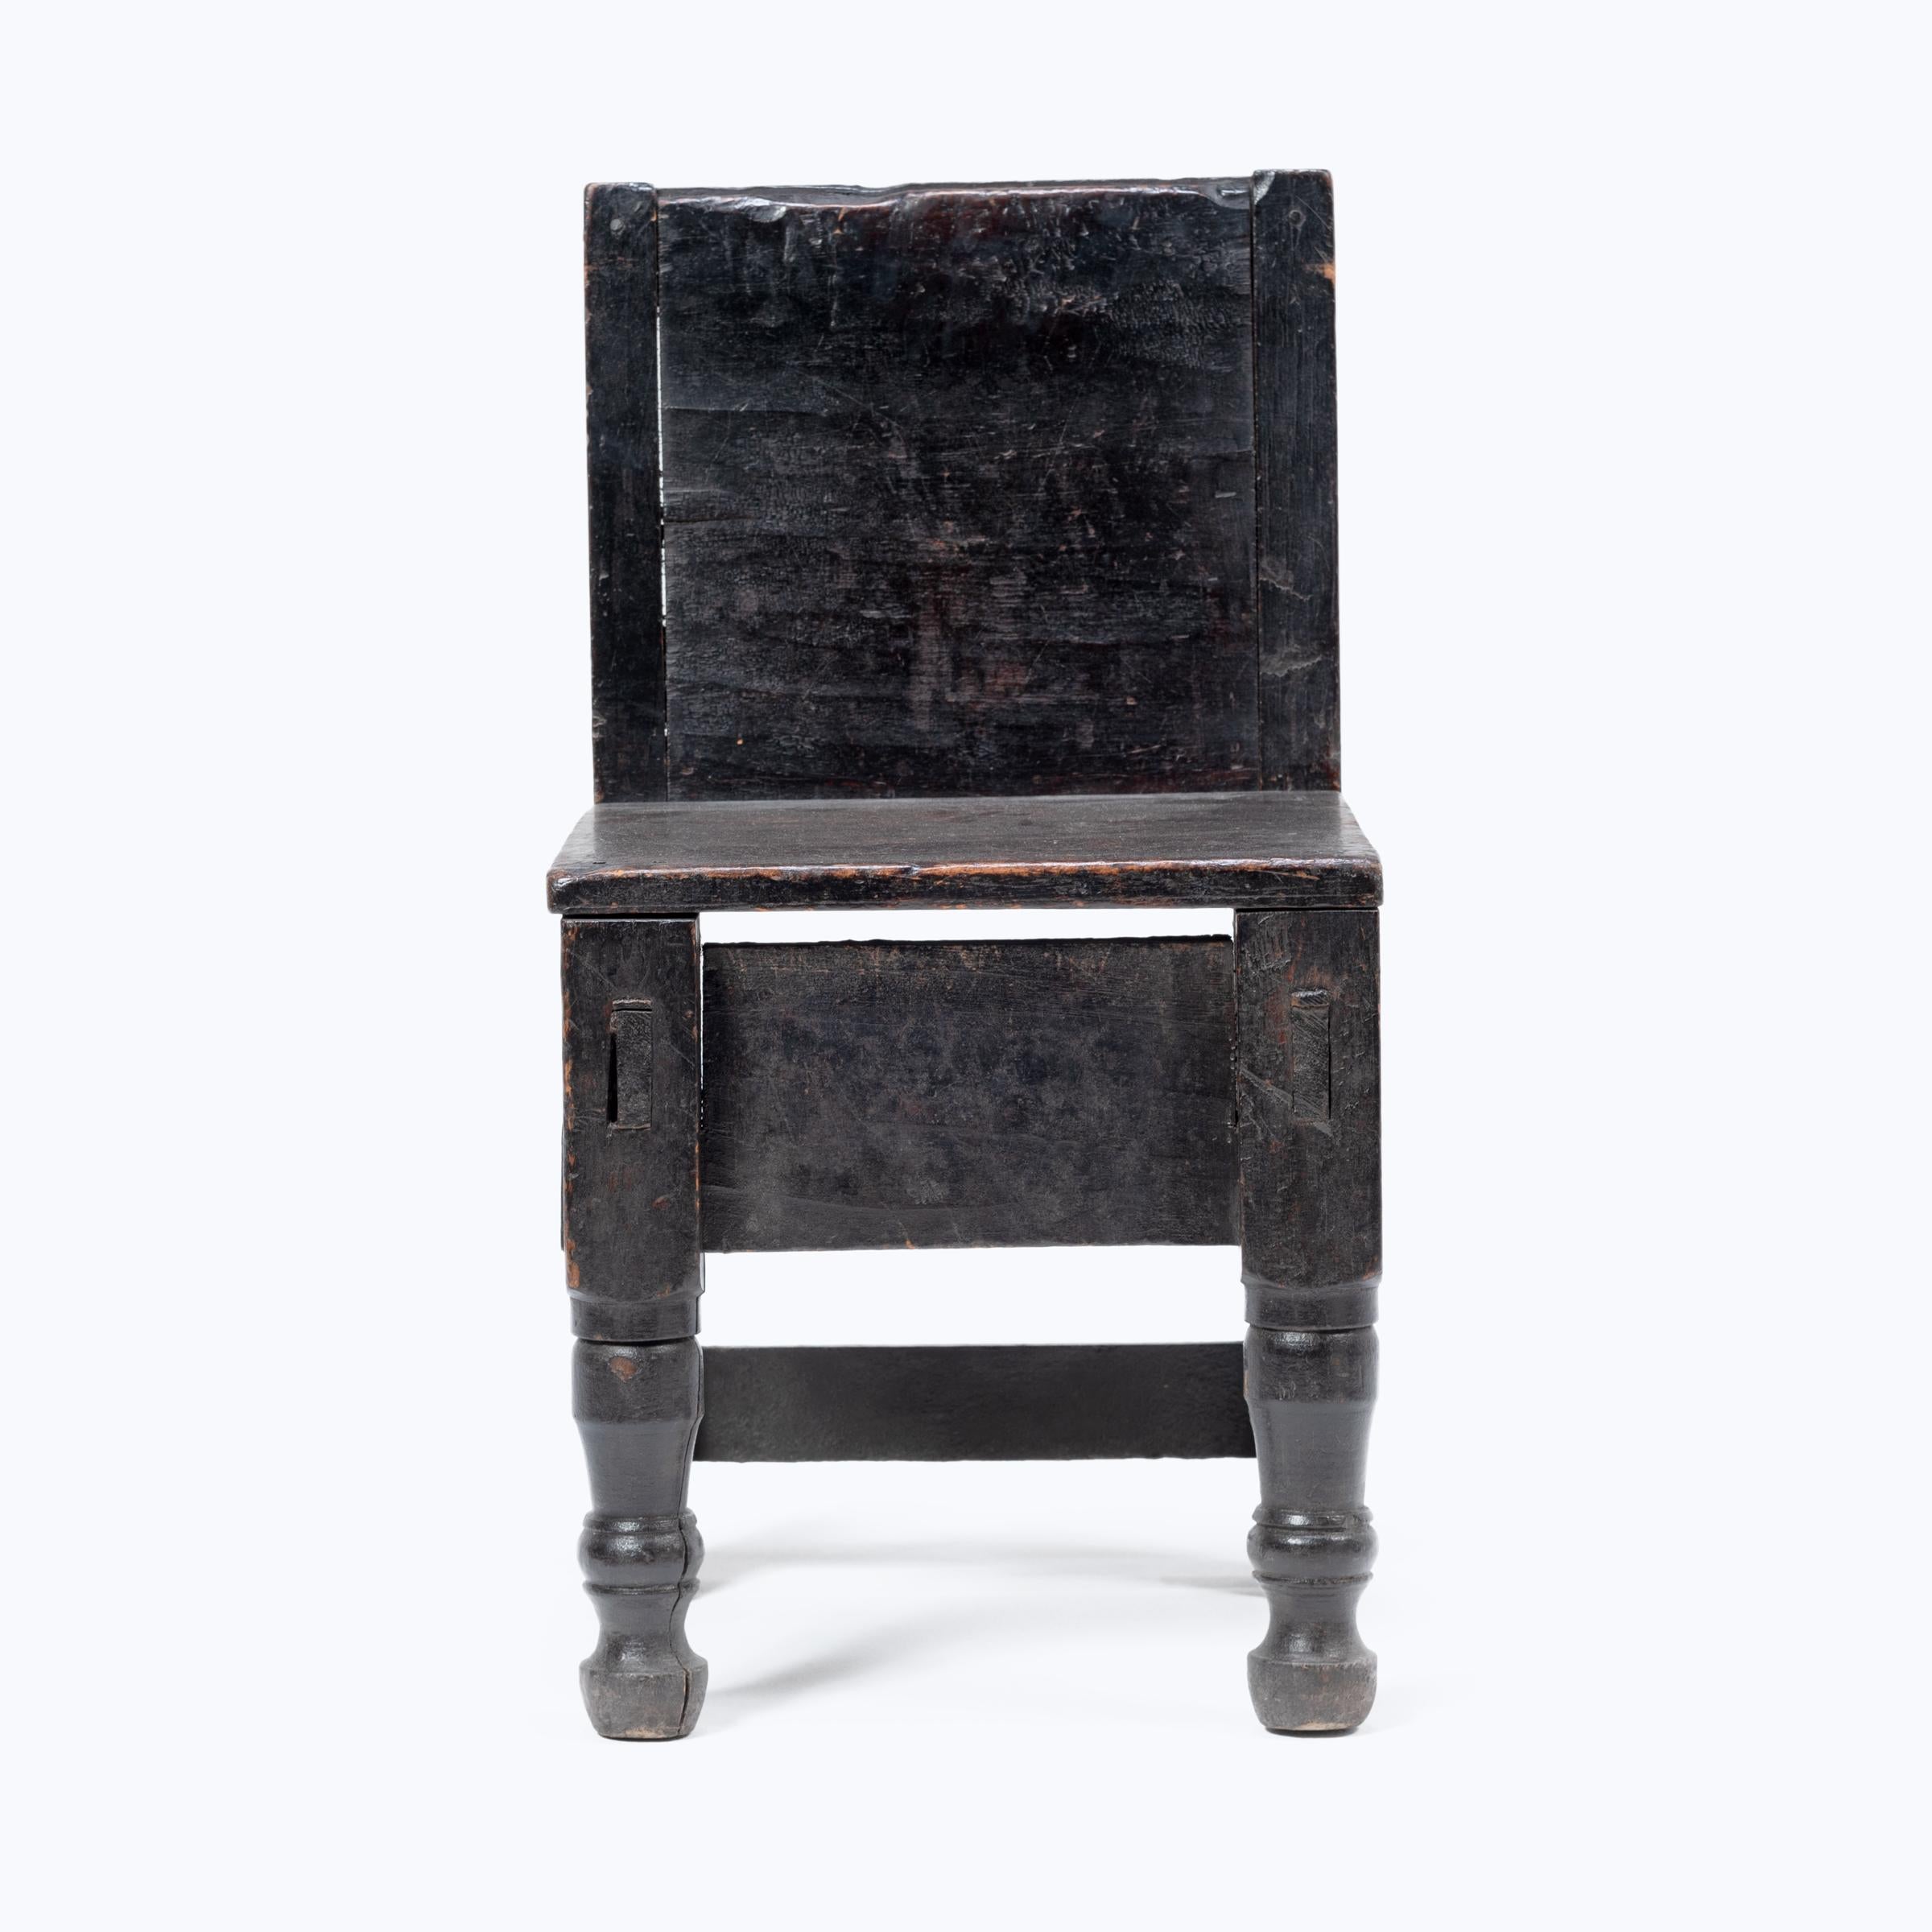 Dieser zierliche guatemaltekische Kinderstuhl aus dem frühen 20. Jahrhundert besticht durch seine verspielte Asymmetrie und die Mischung der Motive. Der bemalte Stuhl mit seiner kantigen Rückenlehne und dem quadratischen Sitz, der auf zwei